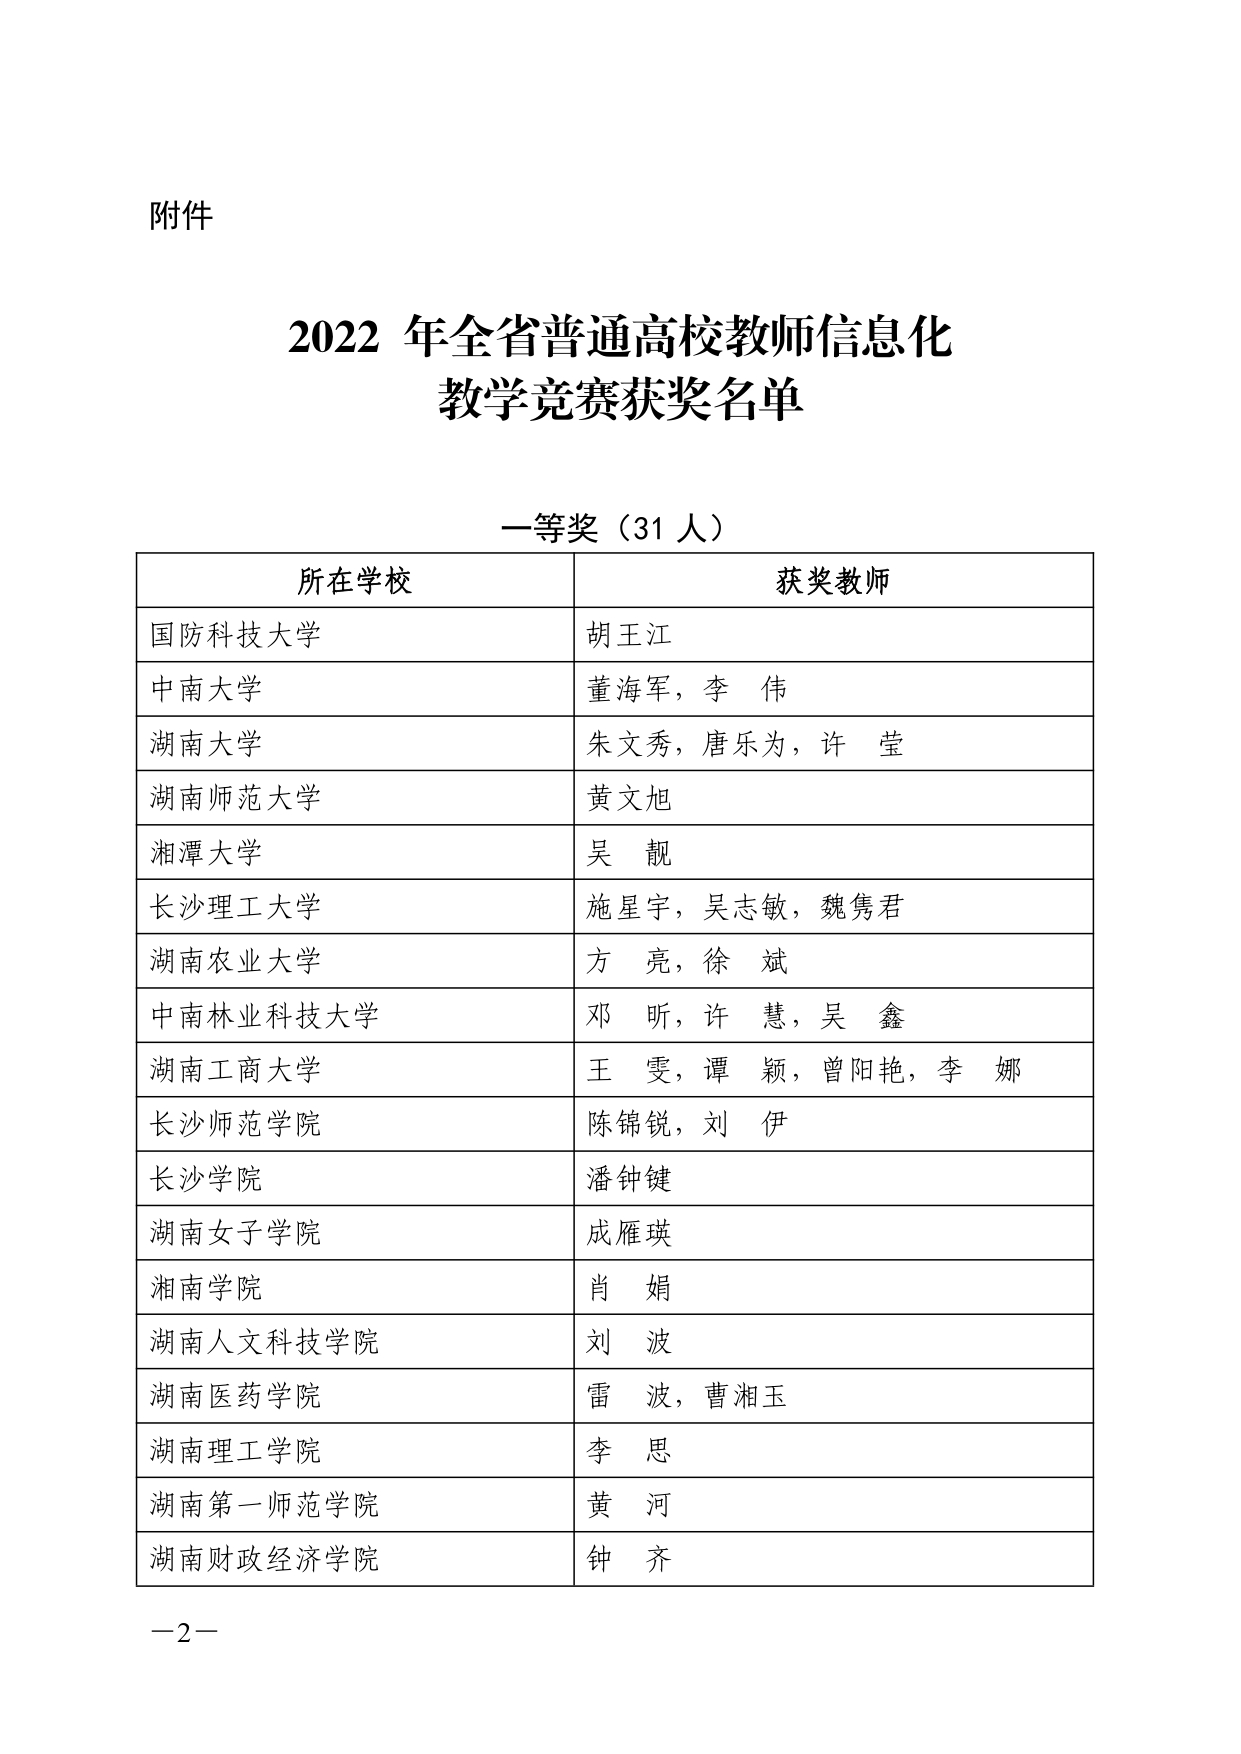 关于公布 2022 年湖南省普通高校教师信息化教学竞赛获奖结果的通知(湘教通〔2022〕353号)_page-0002.jpg